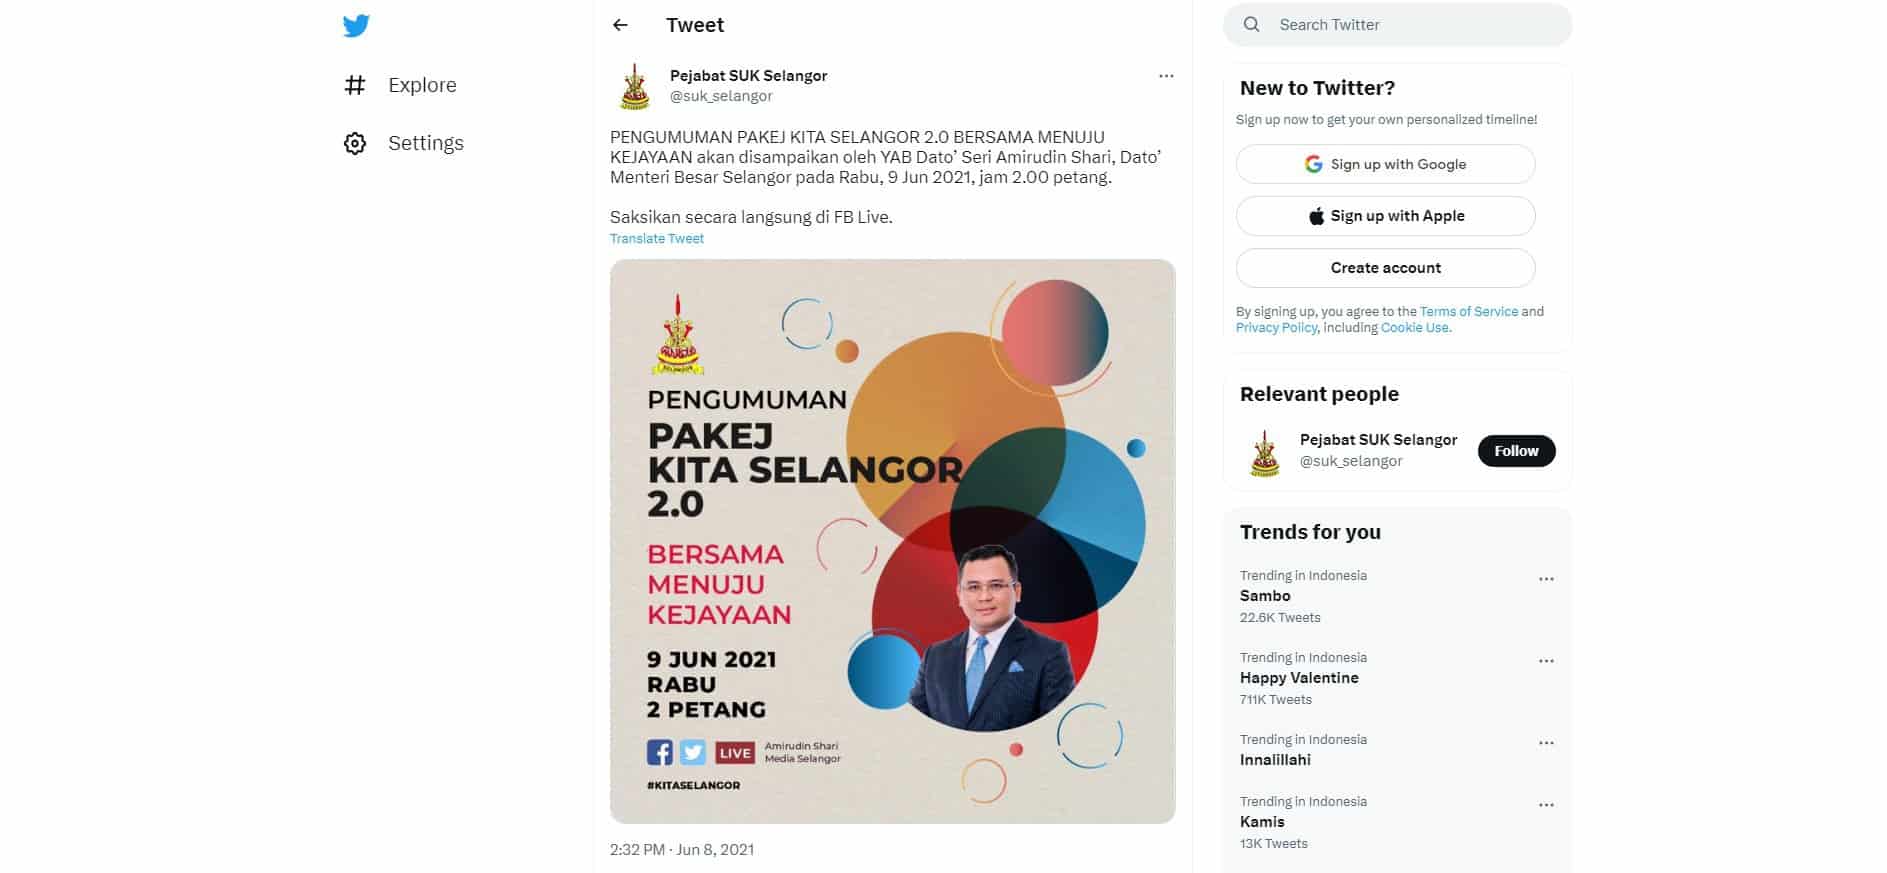 Twitter Pejabat SUK Selangor